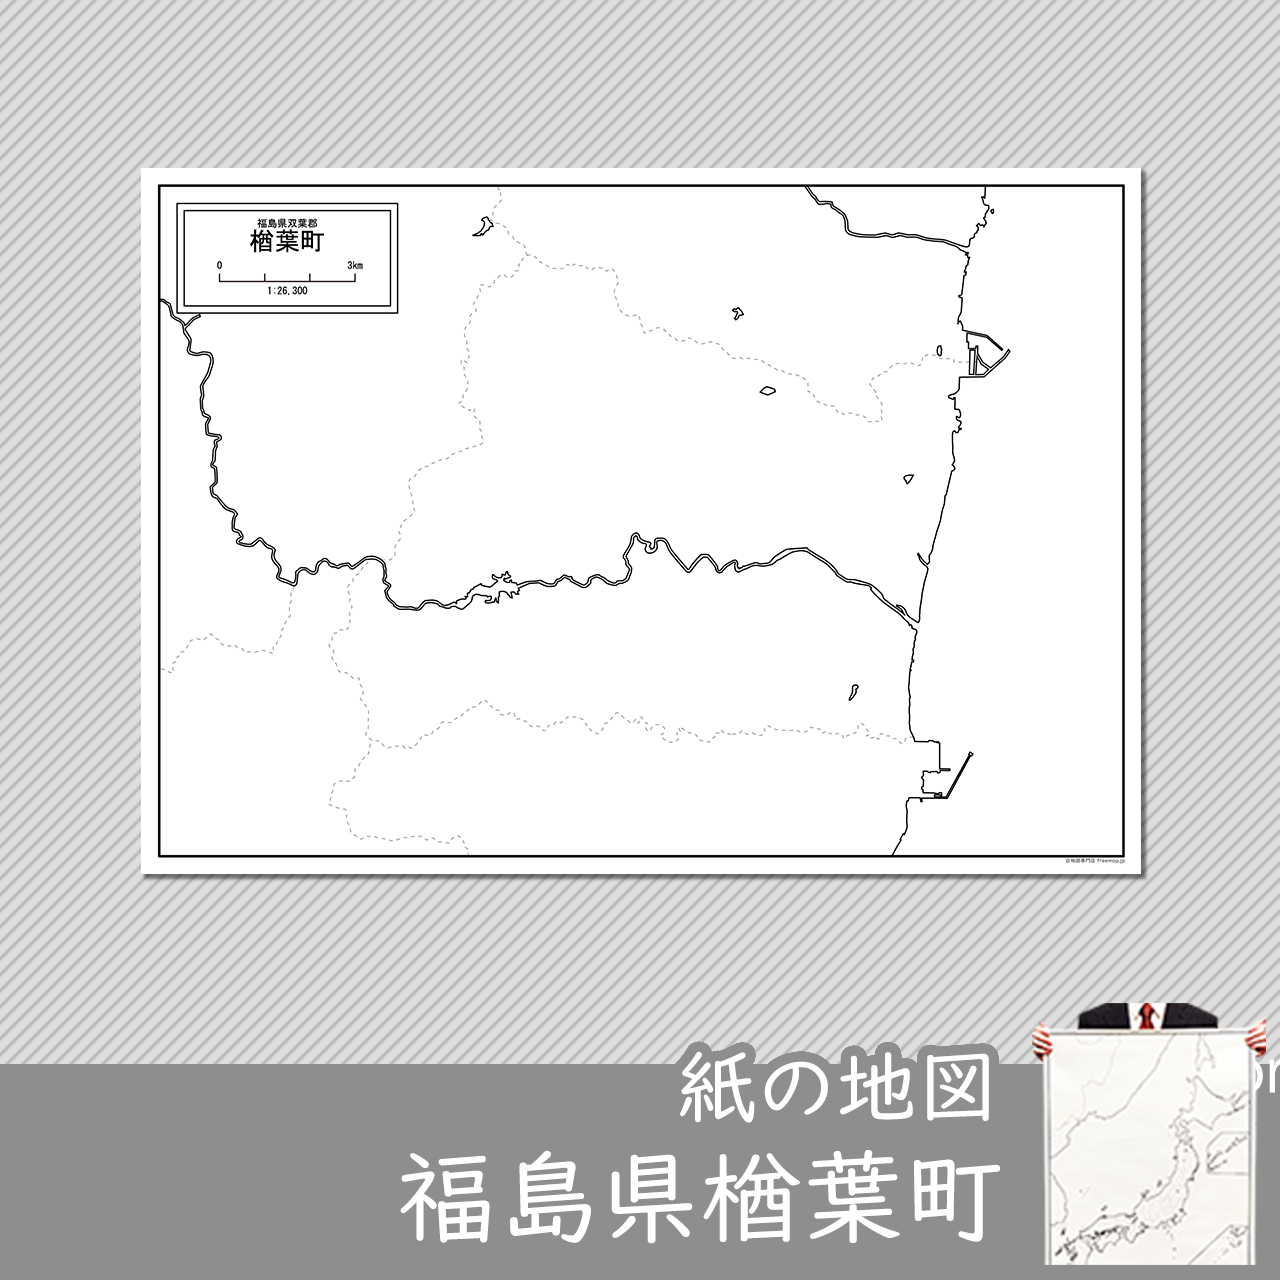 楢葉町の紙の白地図のサムネイル